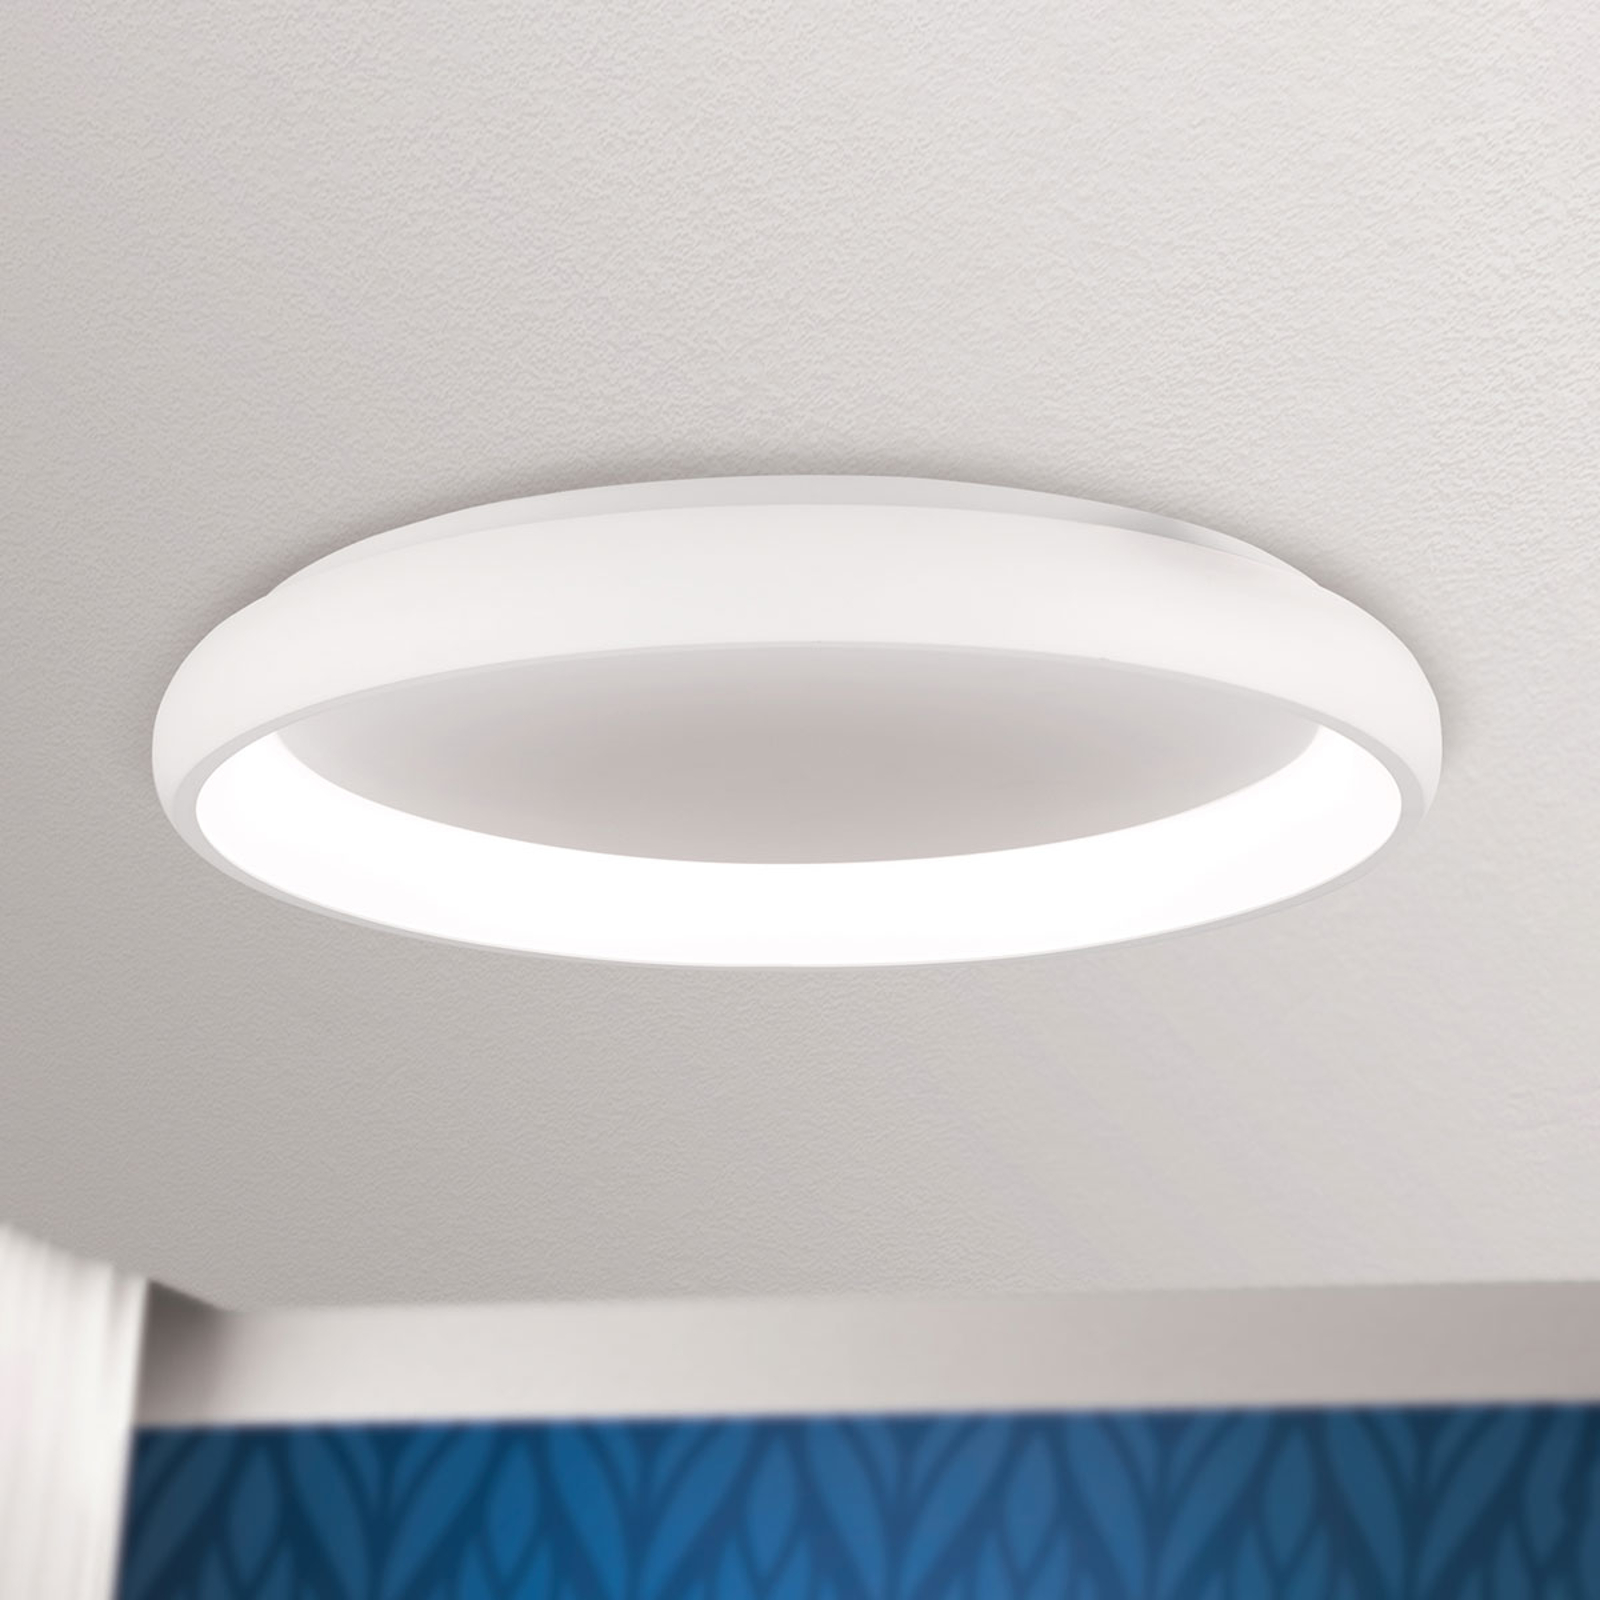 LED-kattovalaisin Venur, valoaukko sisällä, 61 cm